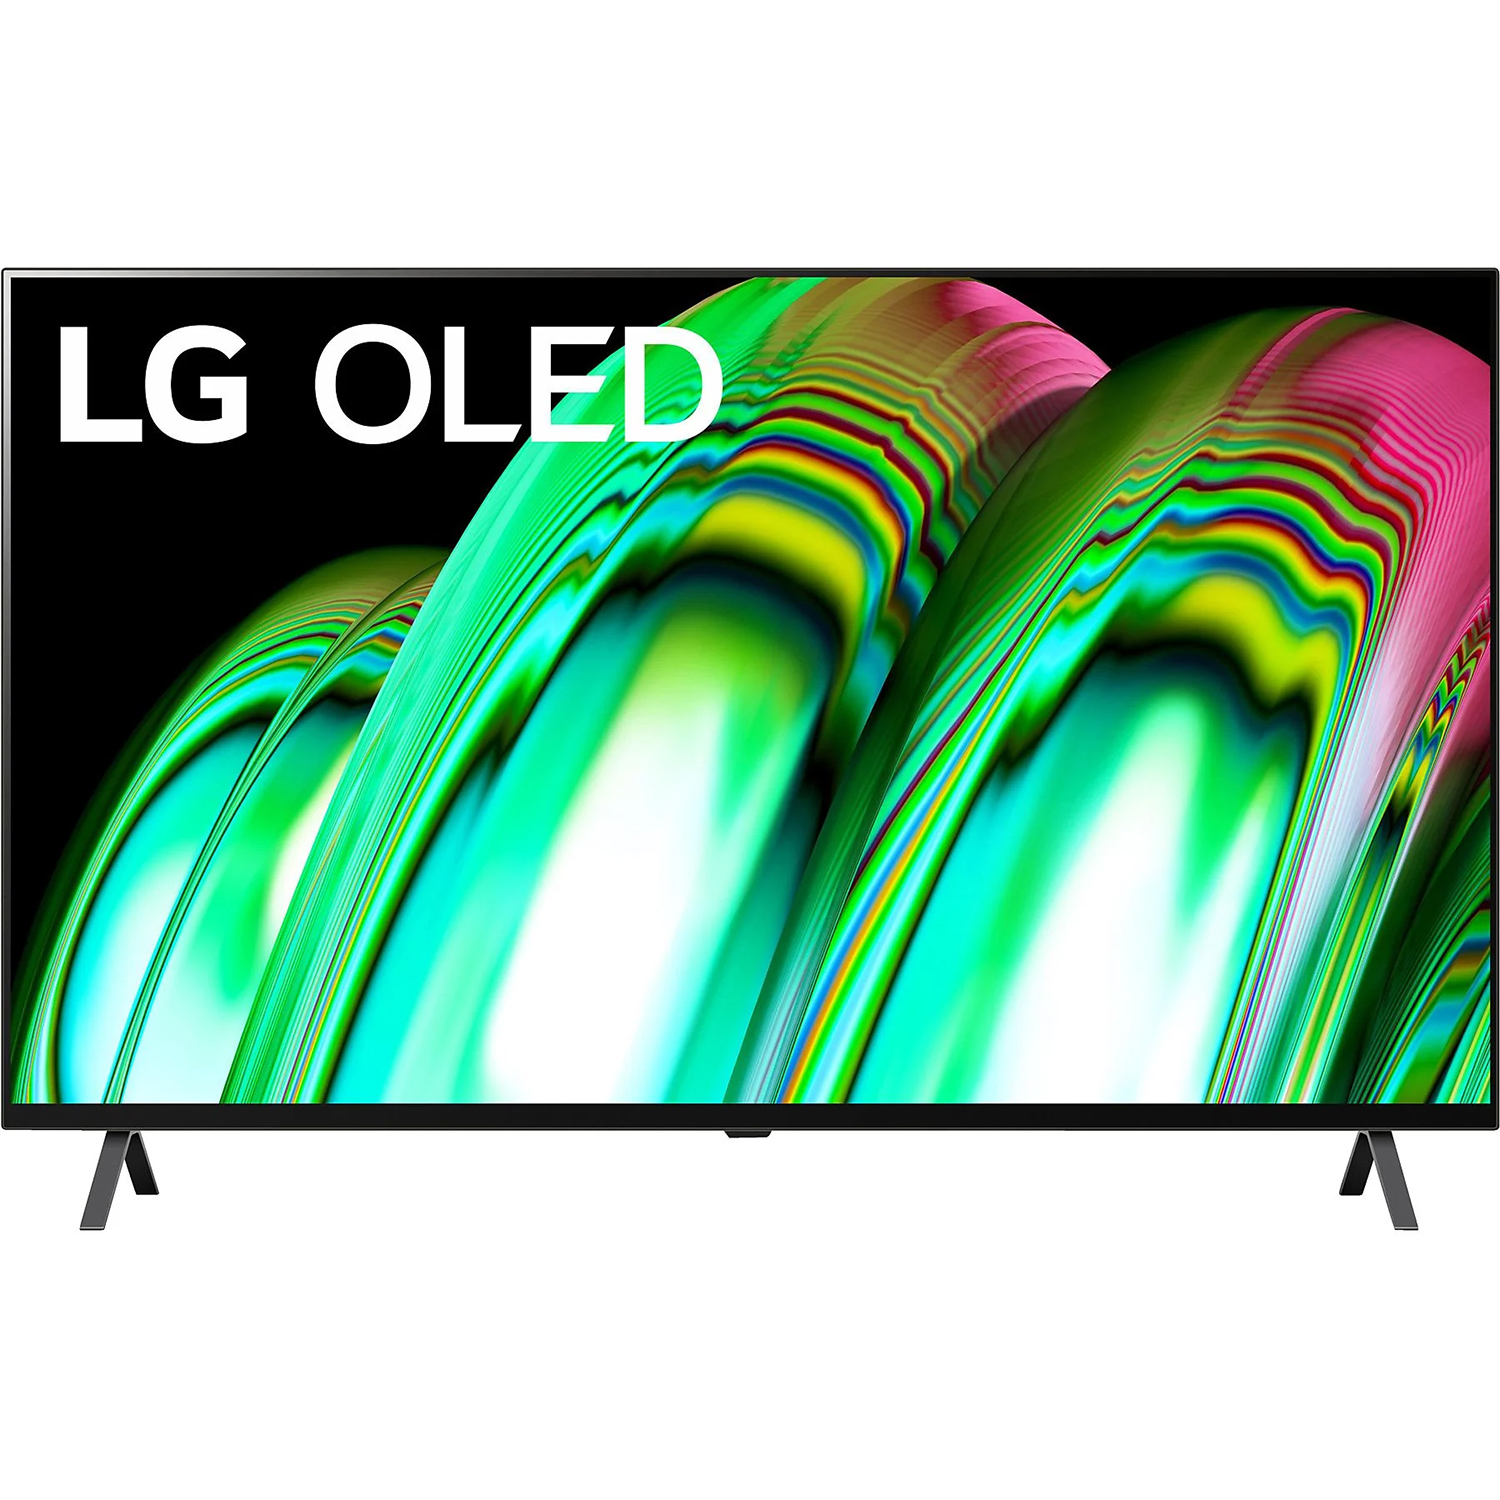 LG OLED Smart TV 48 Zoll (121 cm) 4k UHD Cinema HDR schwarz